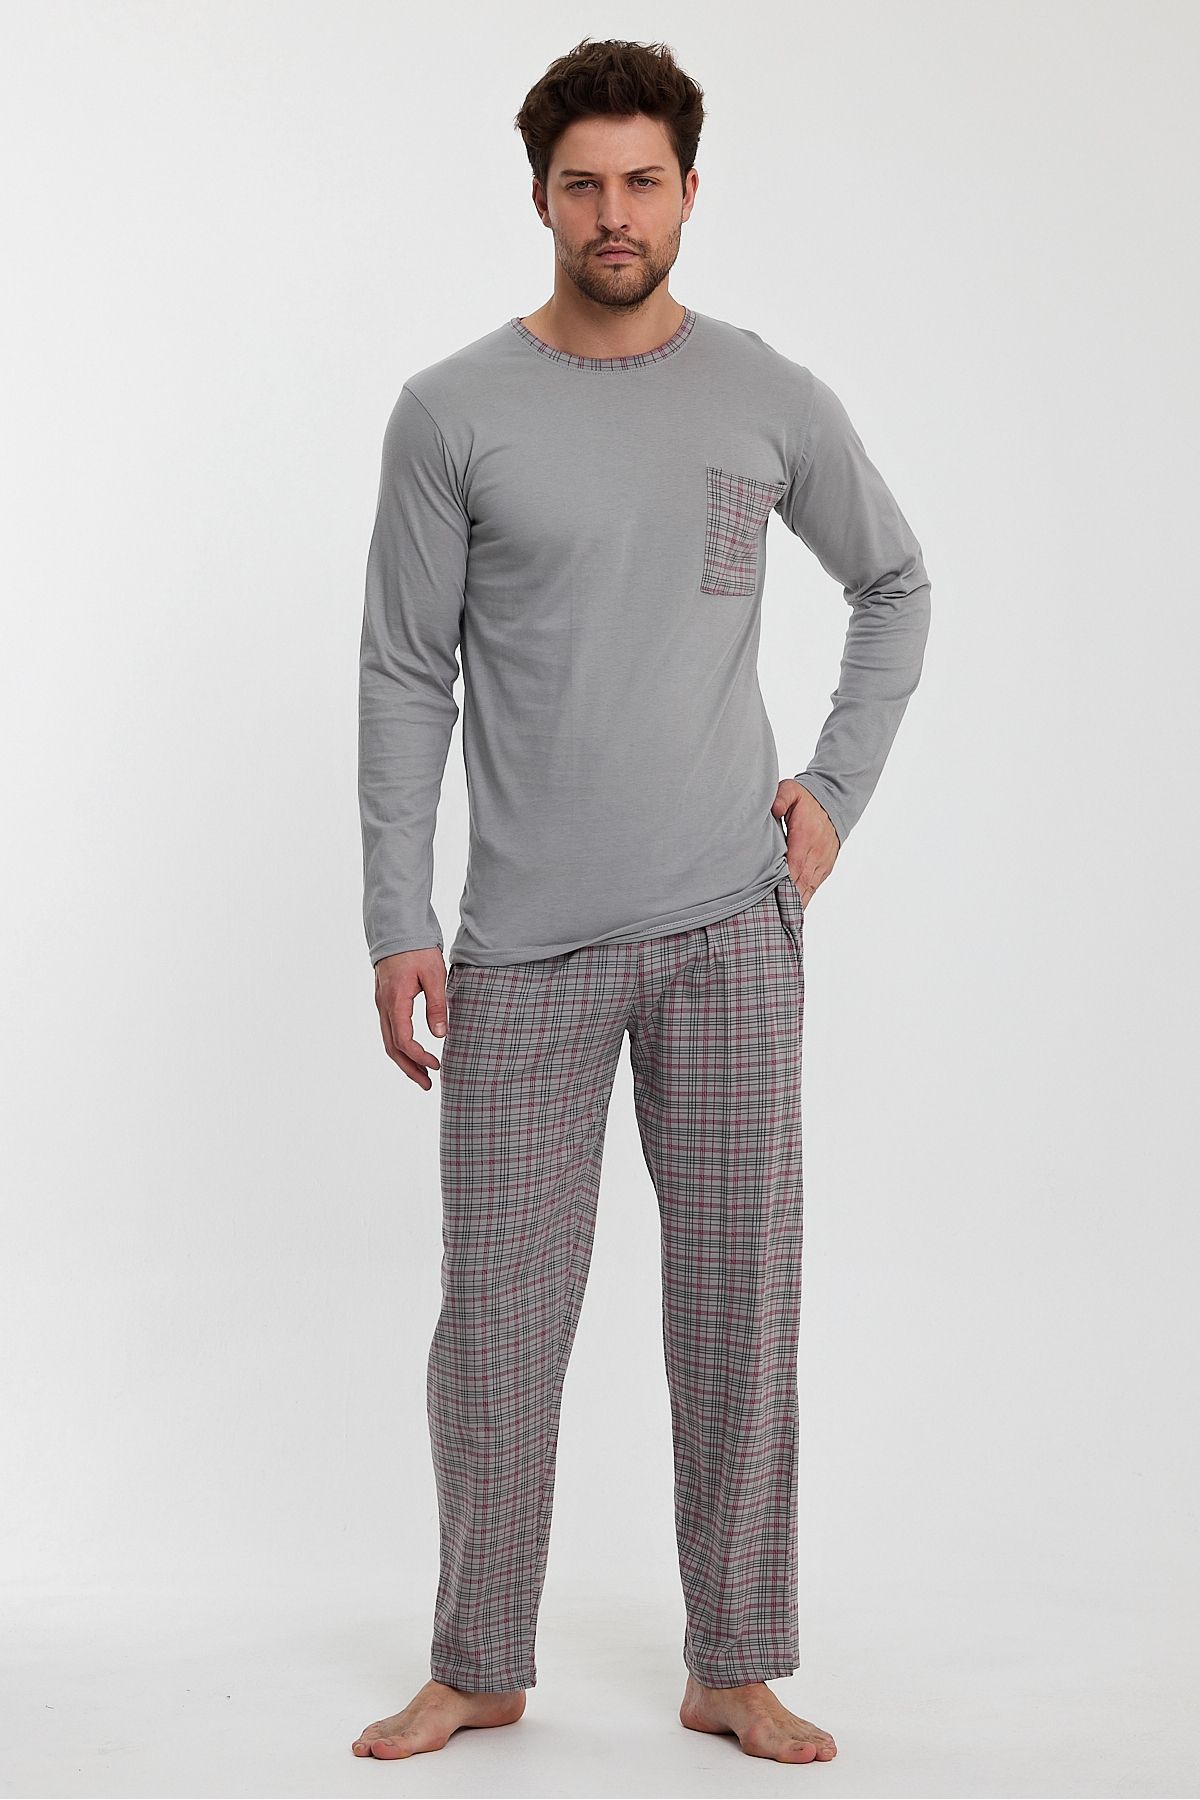 Lunaberry Erkek Pijama Takımı,cep Detaylı,100% Pamuk,çeyizlik, Tam Kesimdir 1 Beden Büyük Tercih Ediniz.